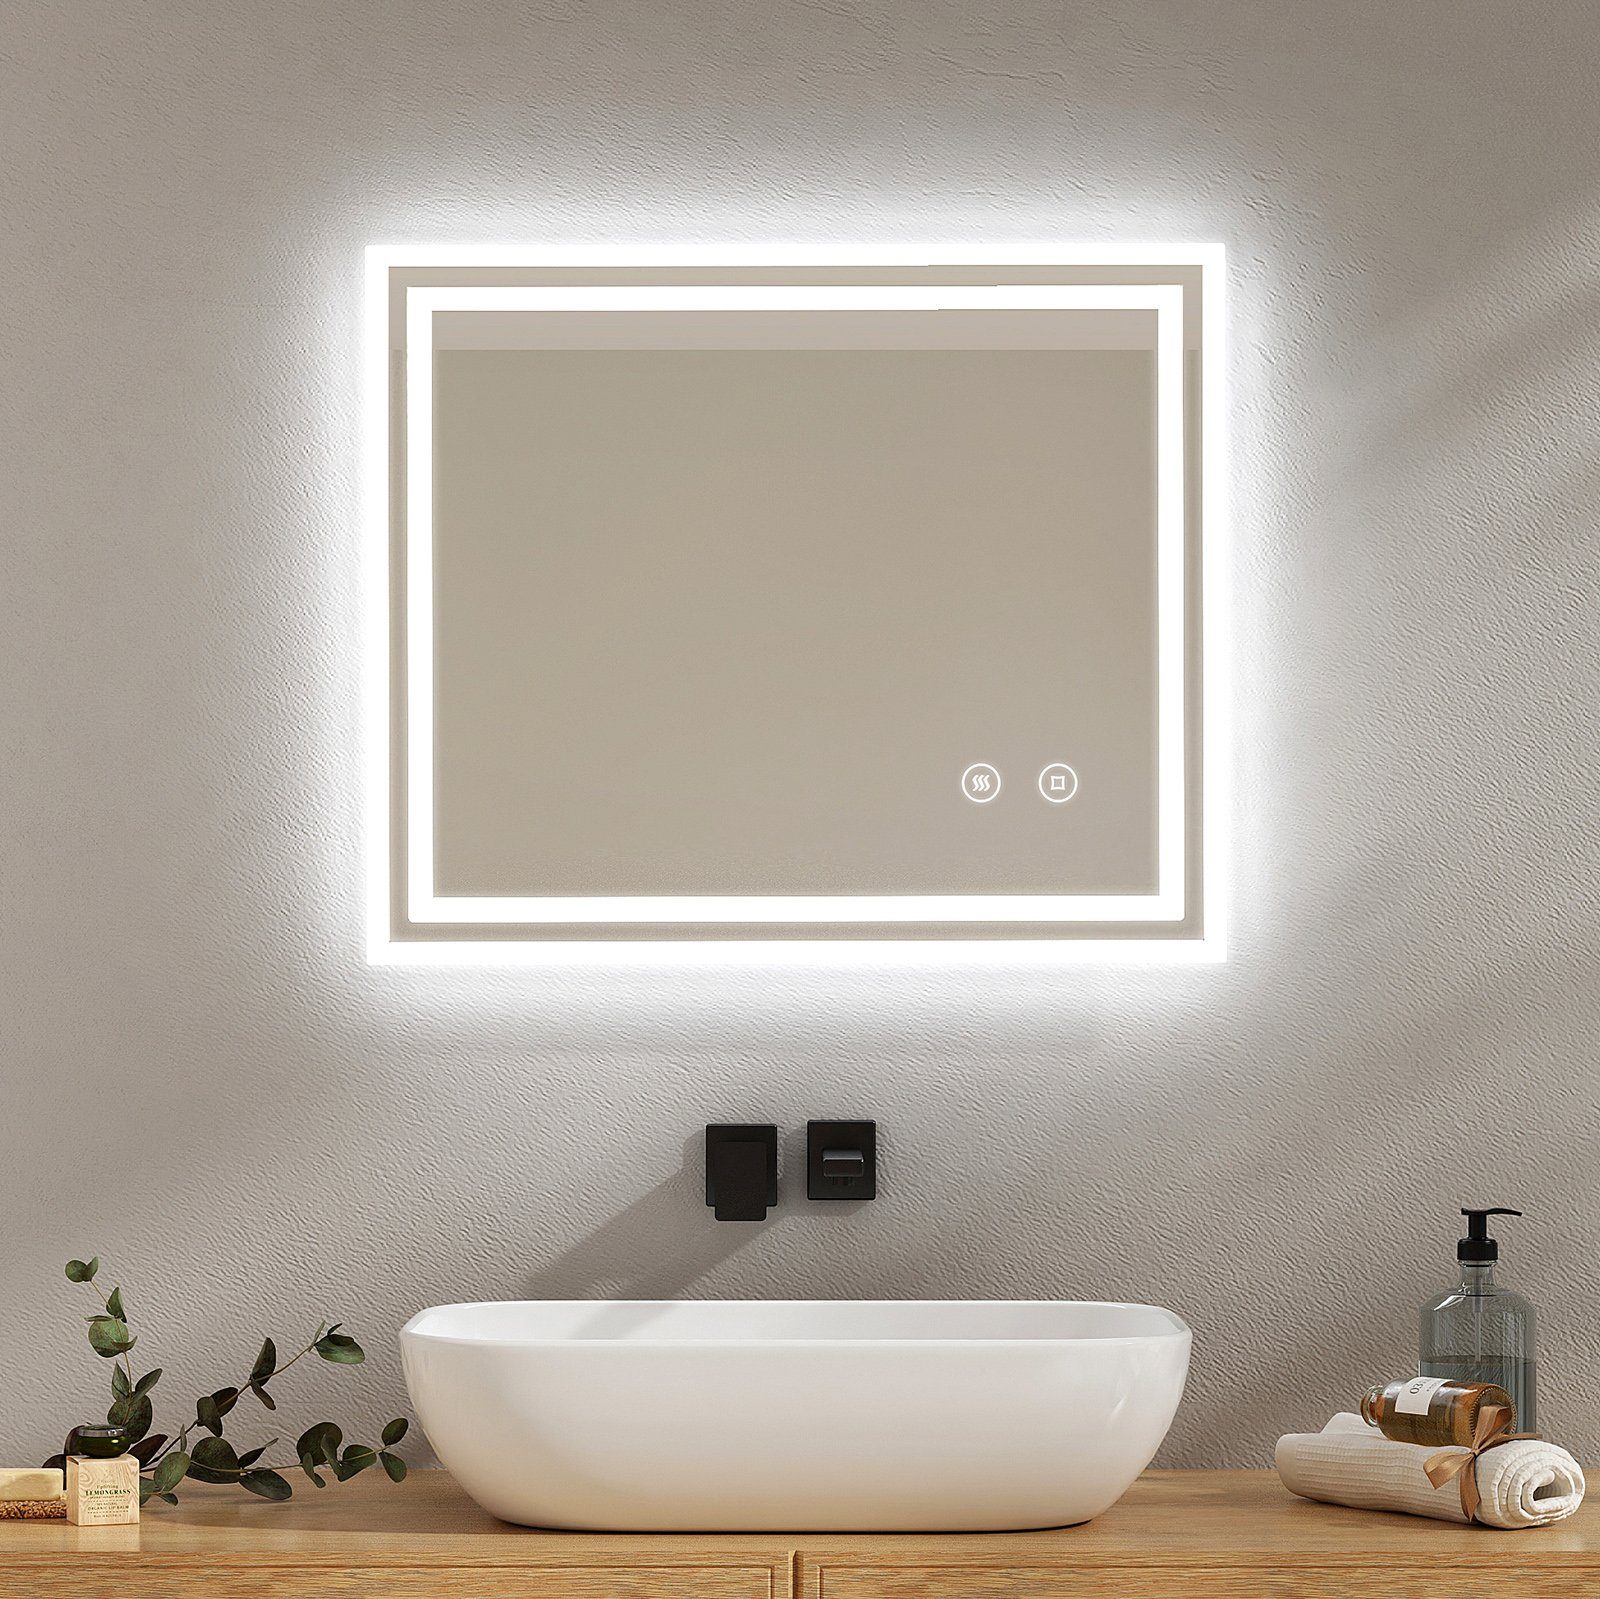 EMKE Badspiegel mit Touch 6500K LED-Beleuchtung eckig, Beschlagfrei, Horizontal&Vertical,in versch. Größen erhältlich | Badspiegel